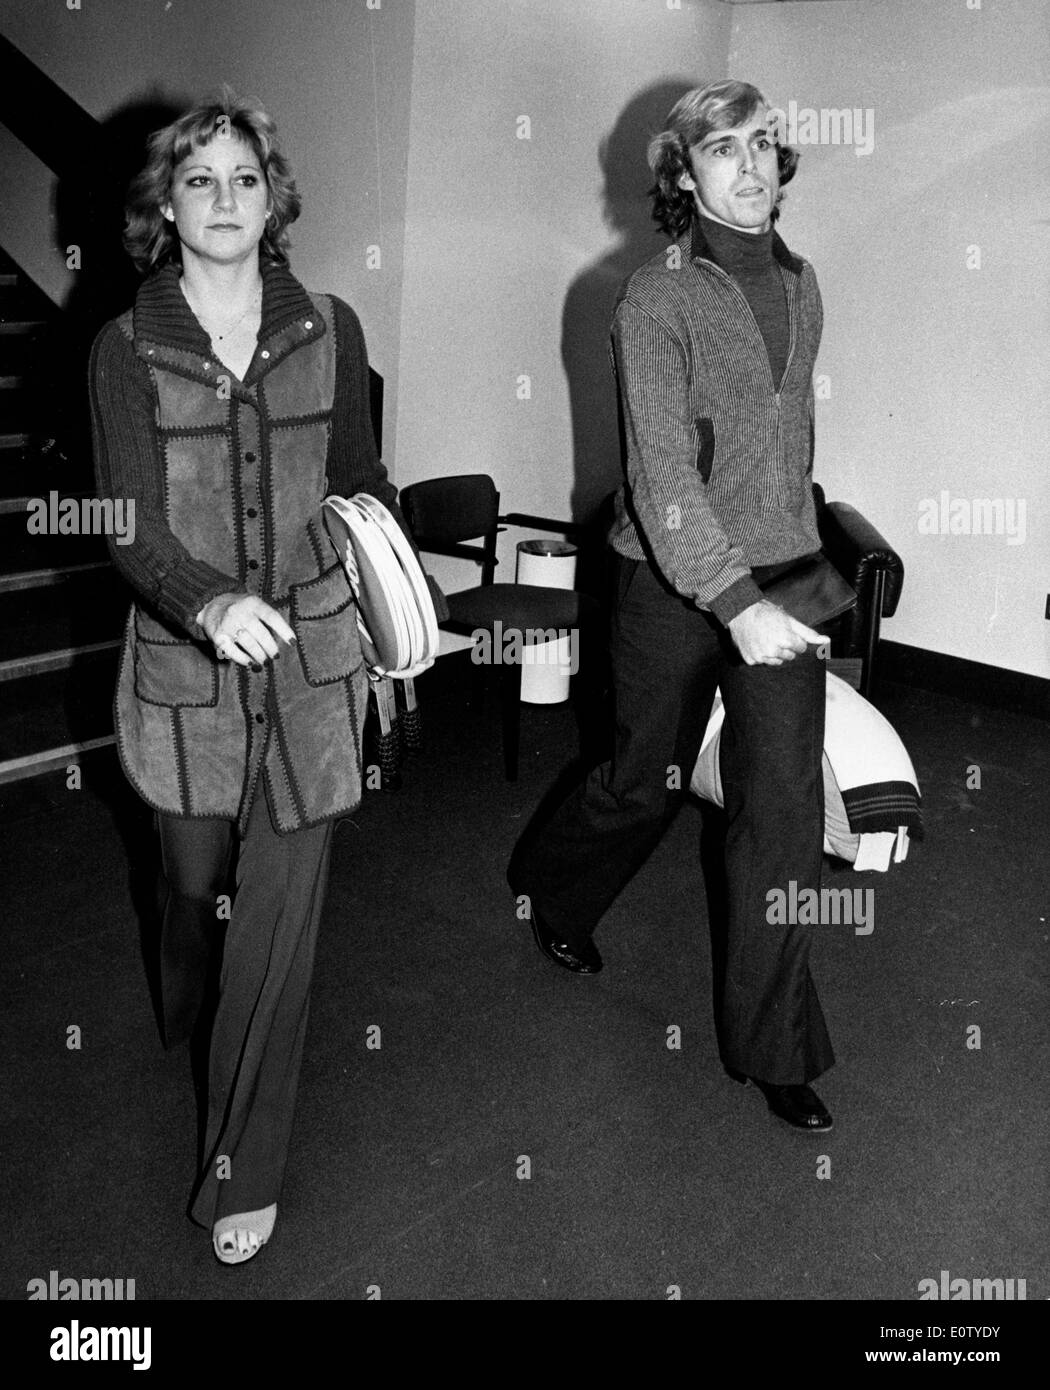 John Lloyd zu Fuß mit seiner Frau Chris Evert Stockfotografie - Alamy